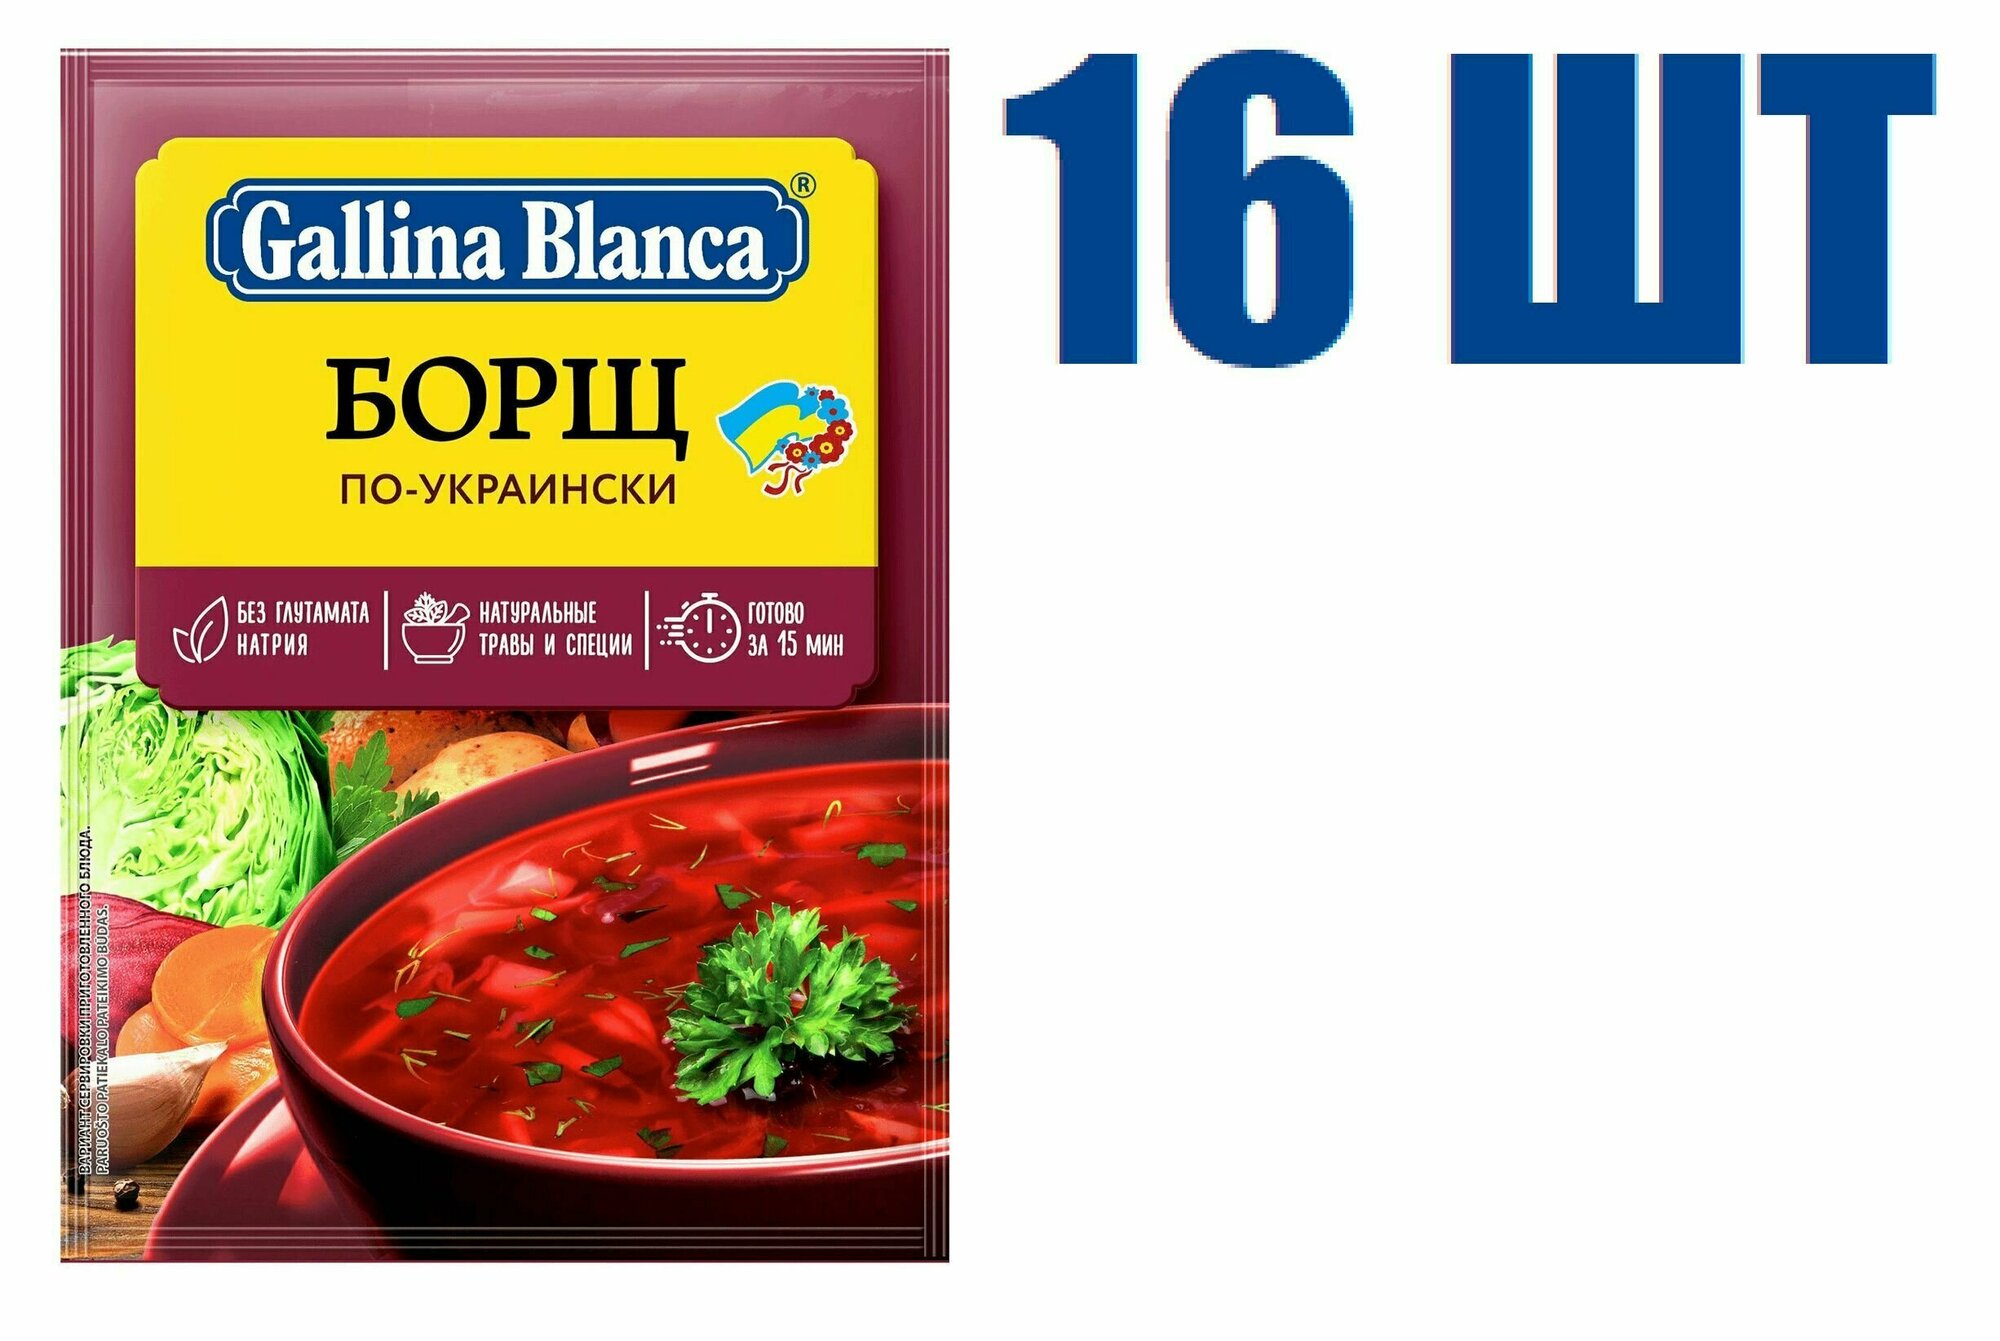 Суп быстрого приготовления, "Gallina Blanca", борщ по-украински, 50г 16 шт